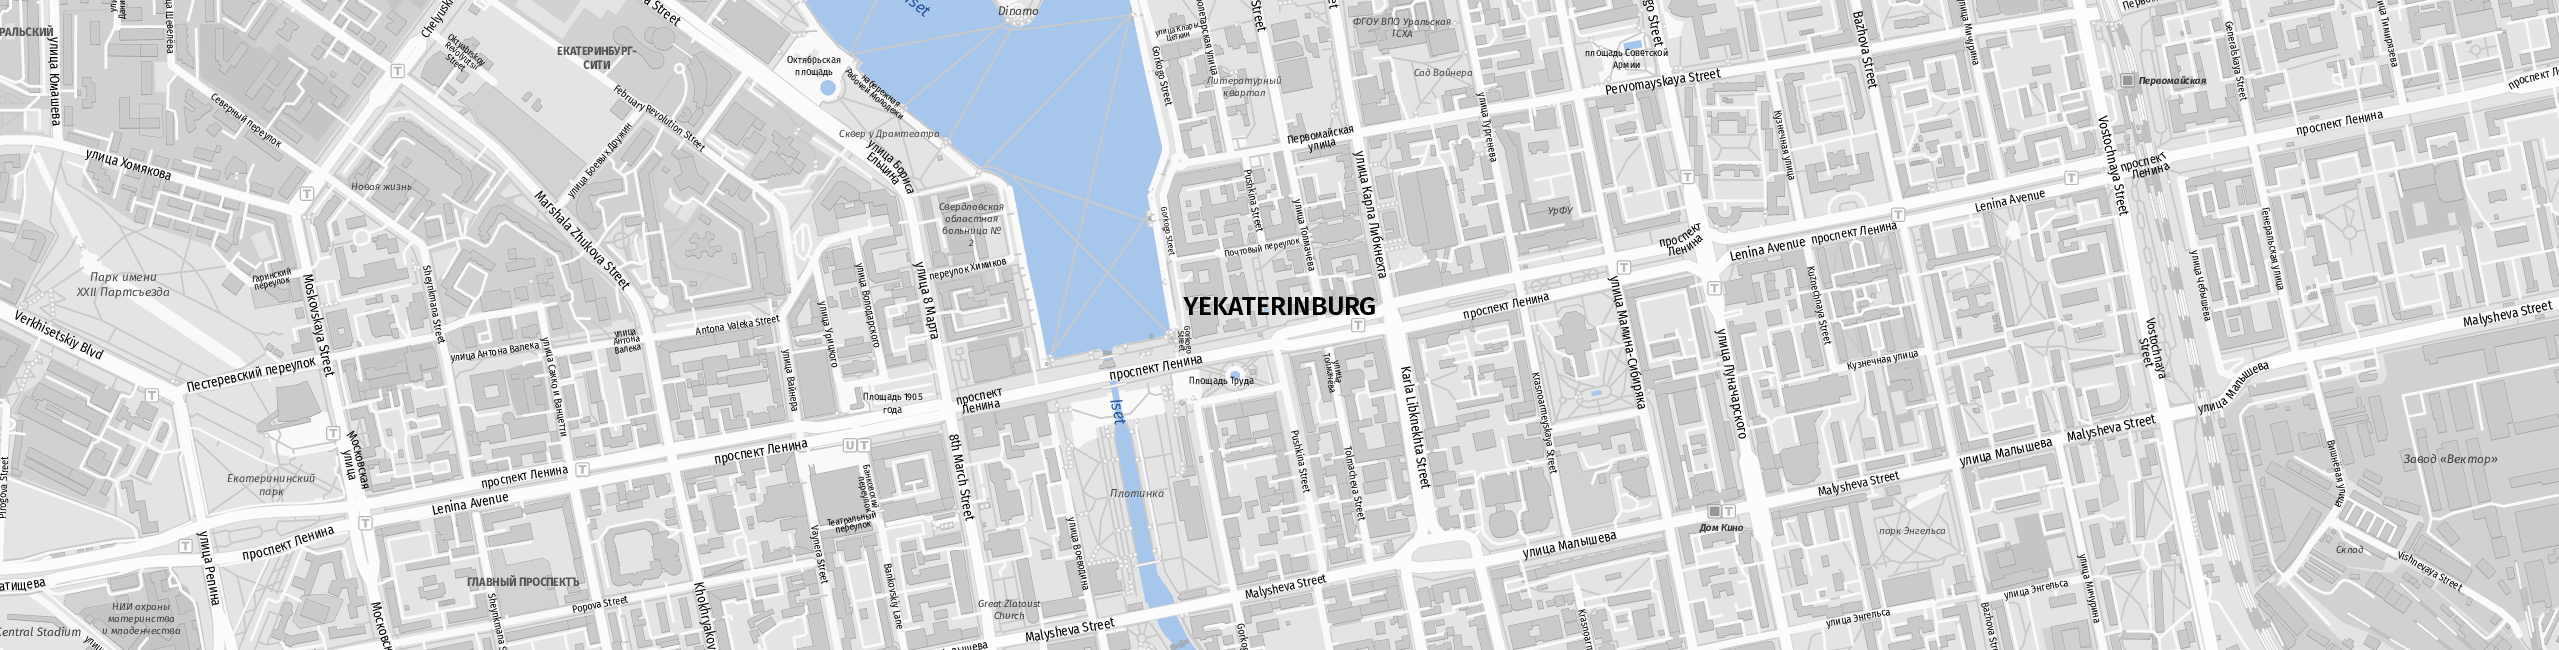 Stadtplan Jekaterinburg zum Downloaden.